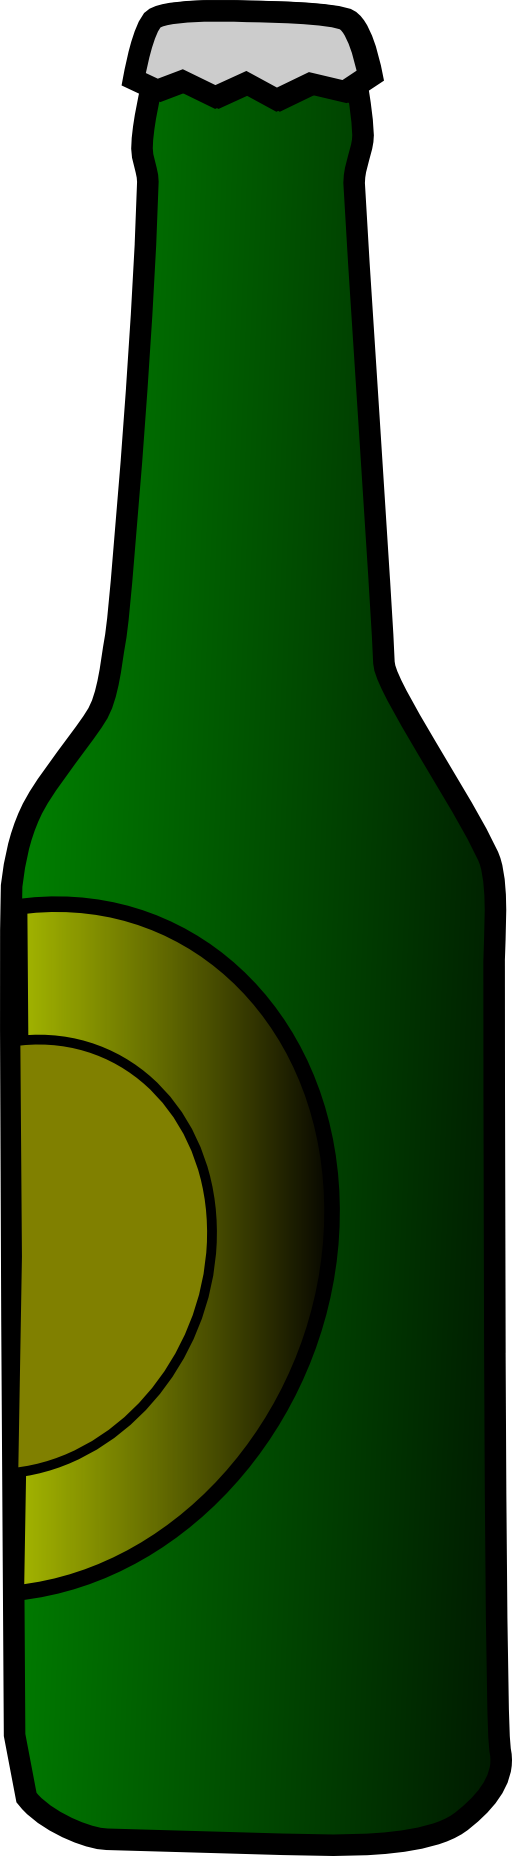 Beer Bottle Clipart I2clipart - Beer Bottle Clipart